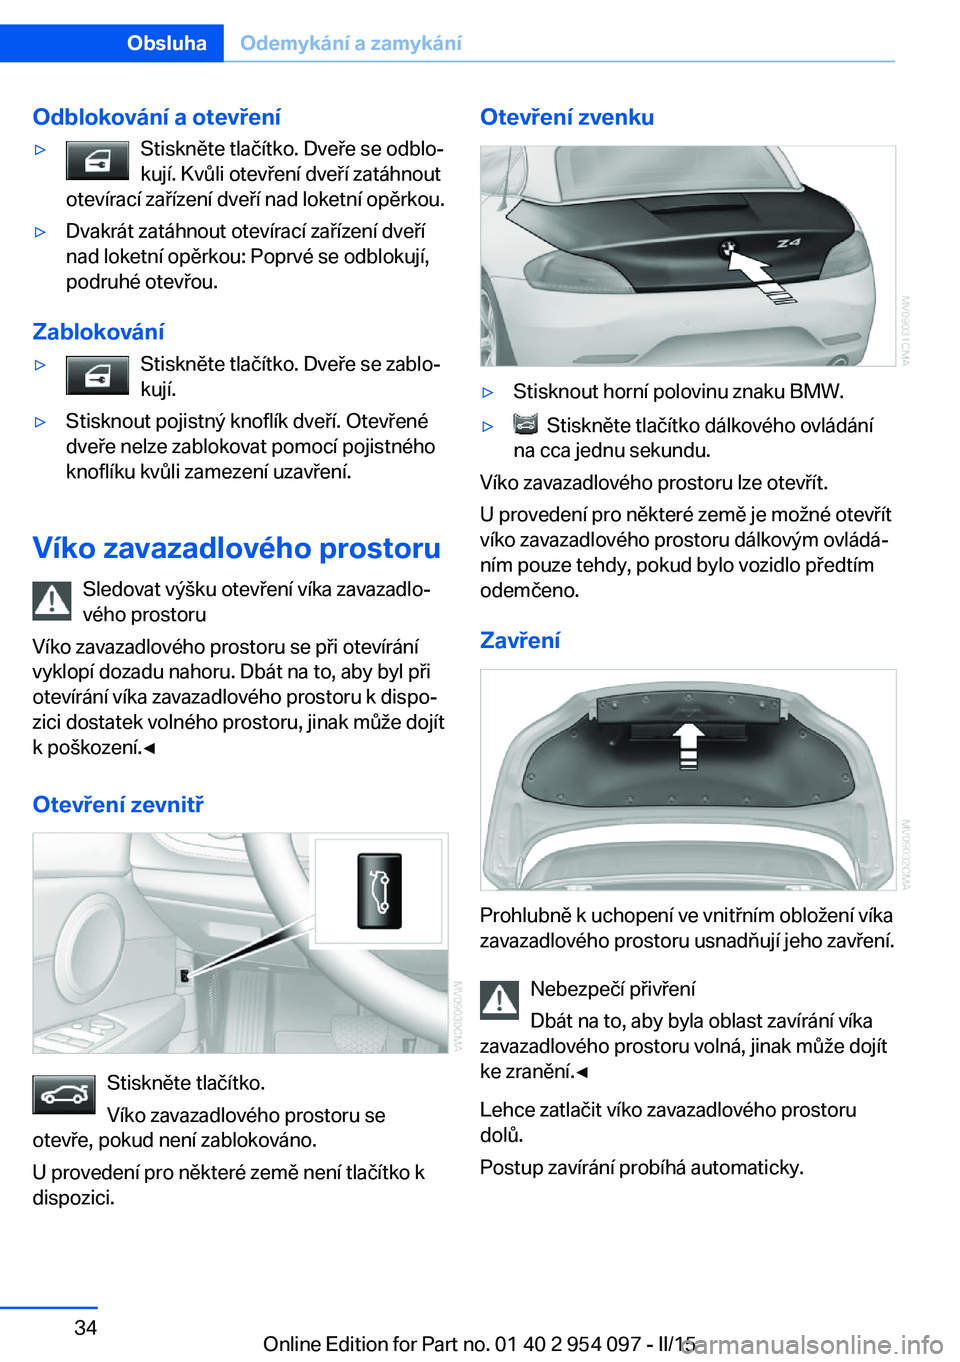 BMW Z4 2016  Návod na použití (in Czech) Odblokování a otevření▷Stiskněte tlačítko. Dveře se odblo‐
kují. Kvůli otevření dveří zatáhnout
otevírací zařízení dveří nad loketní opěrkou.▷Dvakrát zatáhnout otevíra